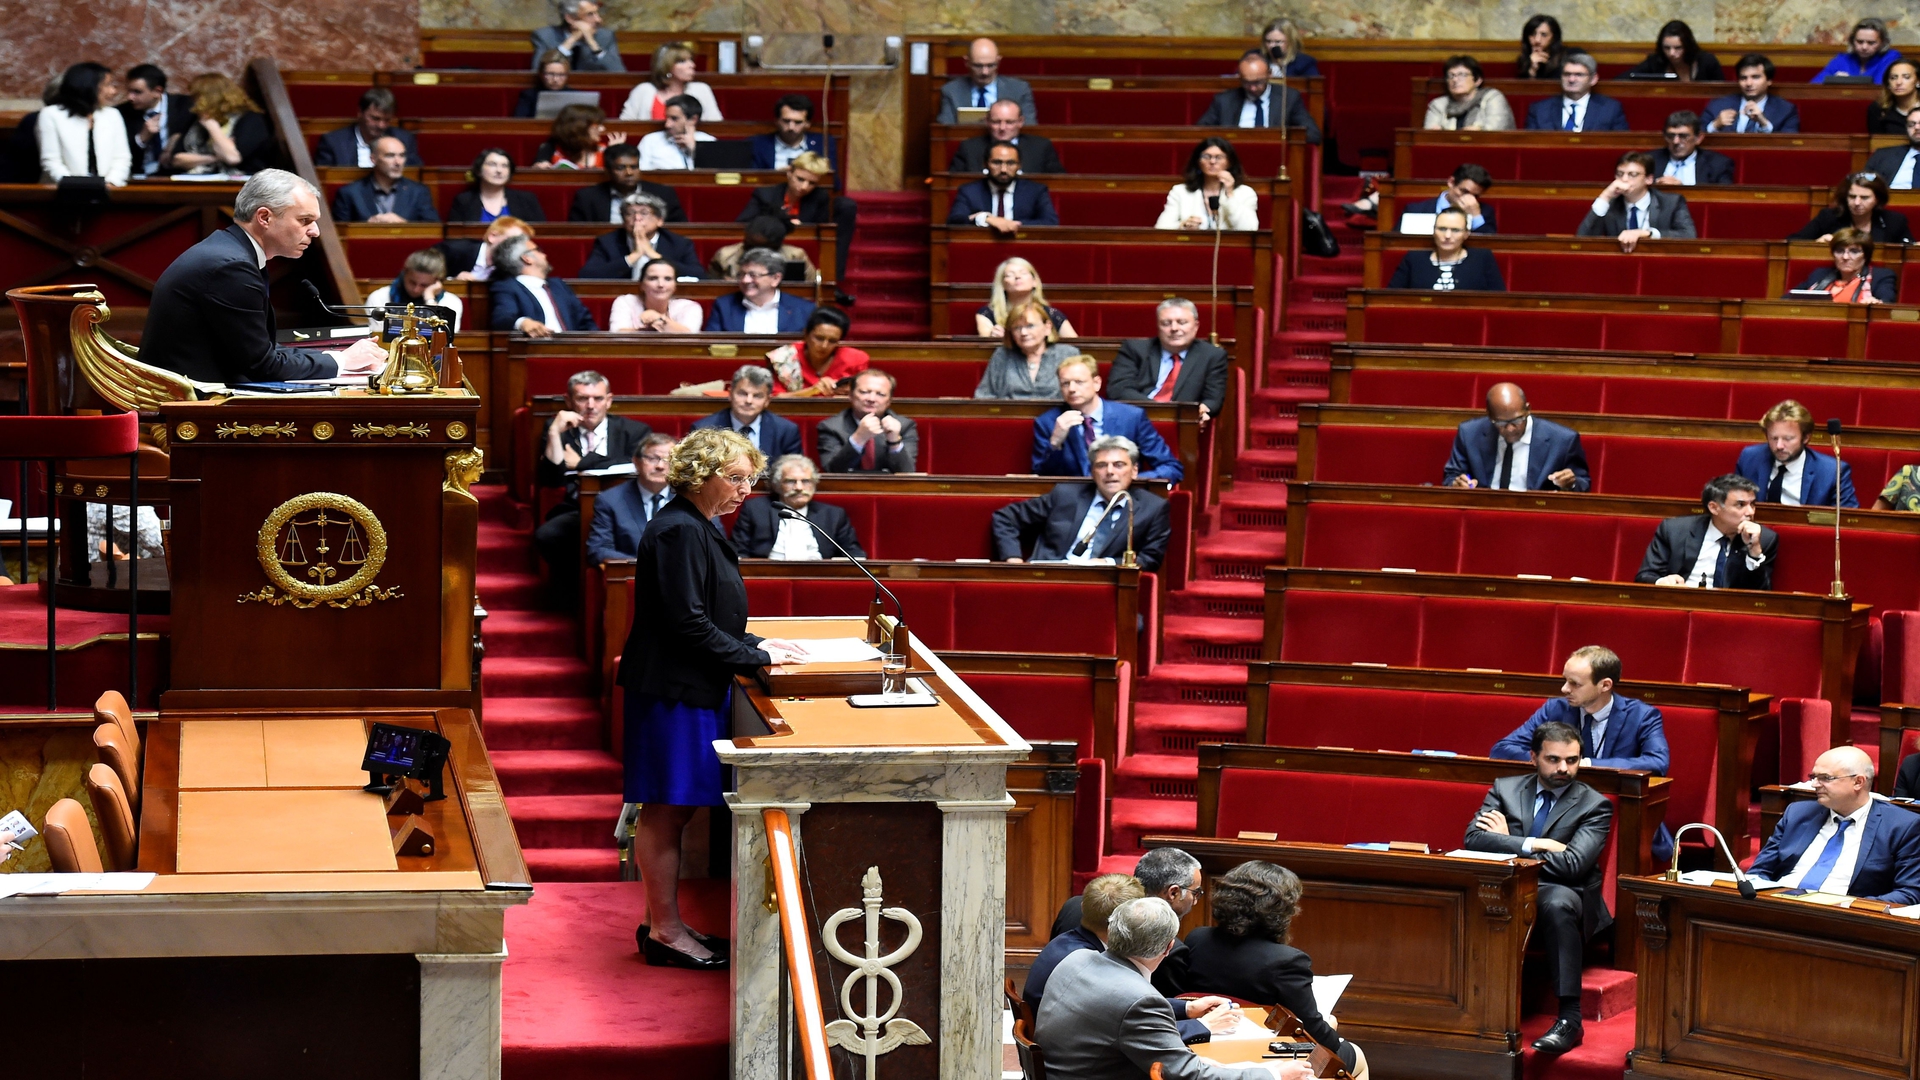 البرلمان الفرنسي يقر قانون منع “نشر مشاهد لقوات الأمن بنية سيئة”